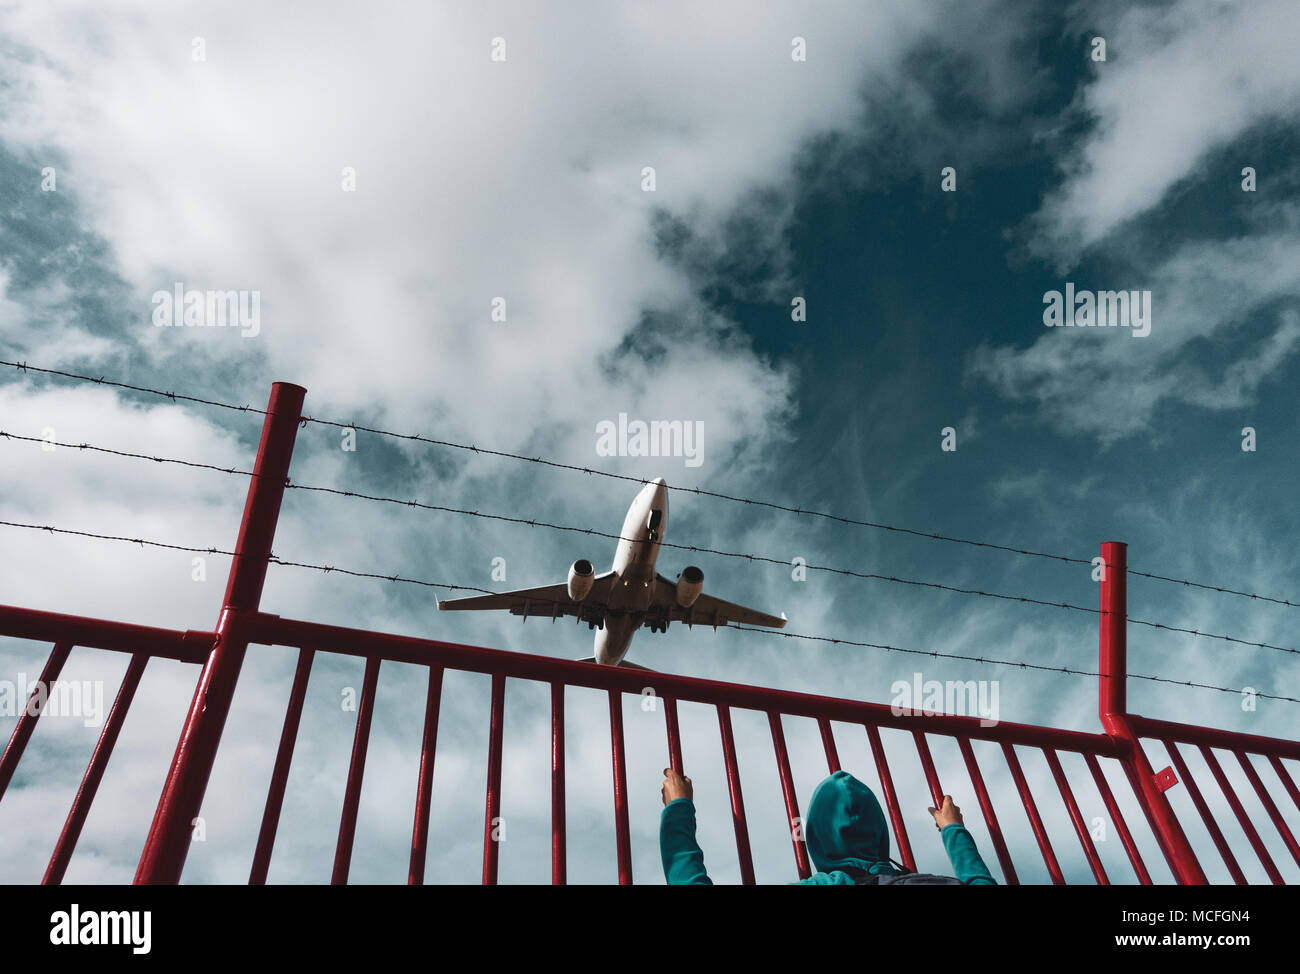 Una mujer mirando un avión/avión desde detrás del perímetro de alambre de púas, cerca de la frontera. Imagen conceptual: Rusia Ucrania Conflicto, zona de exclusión aérea, crisis de refugiados. Foto de stock